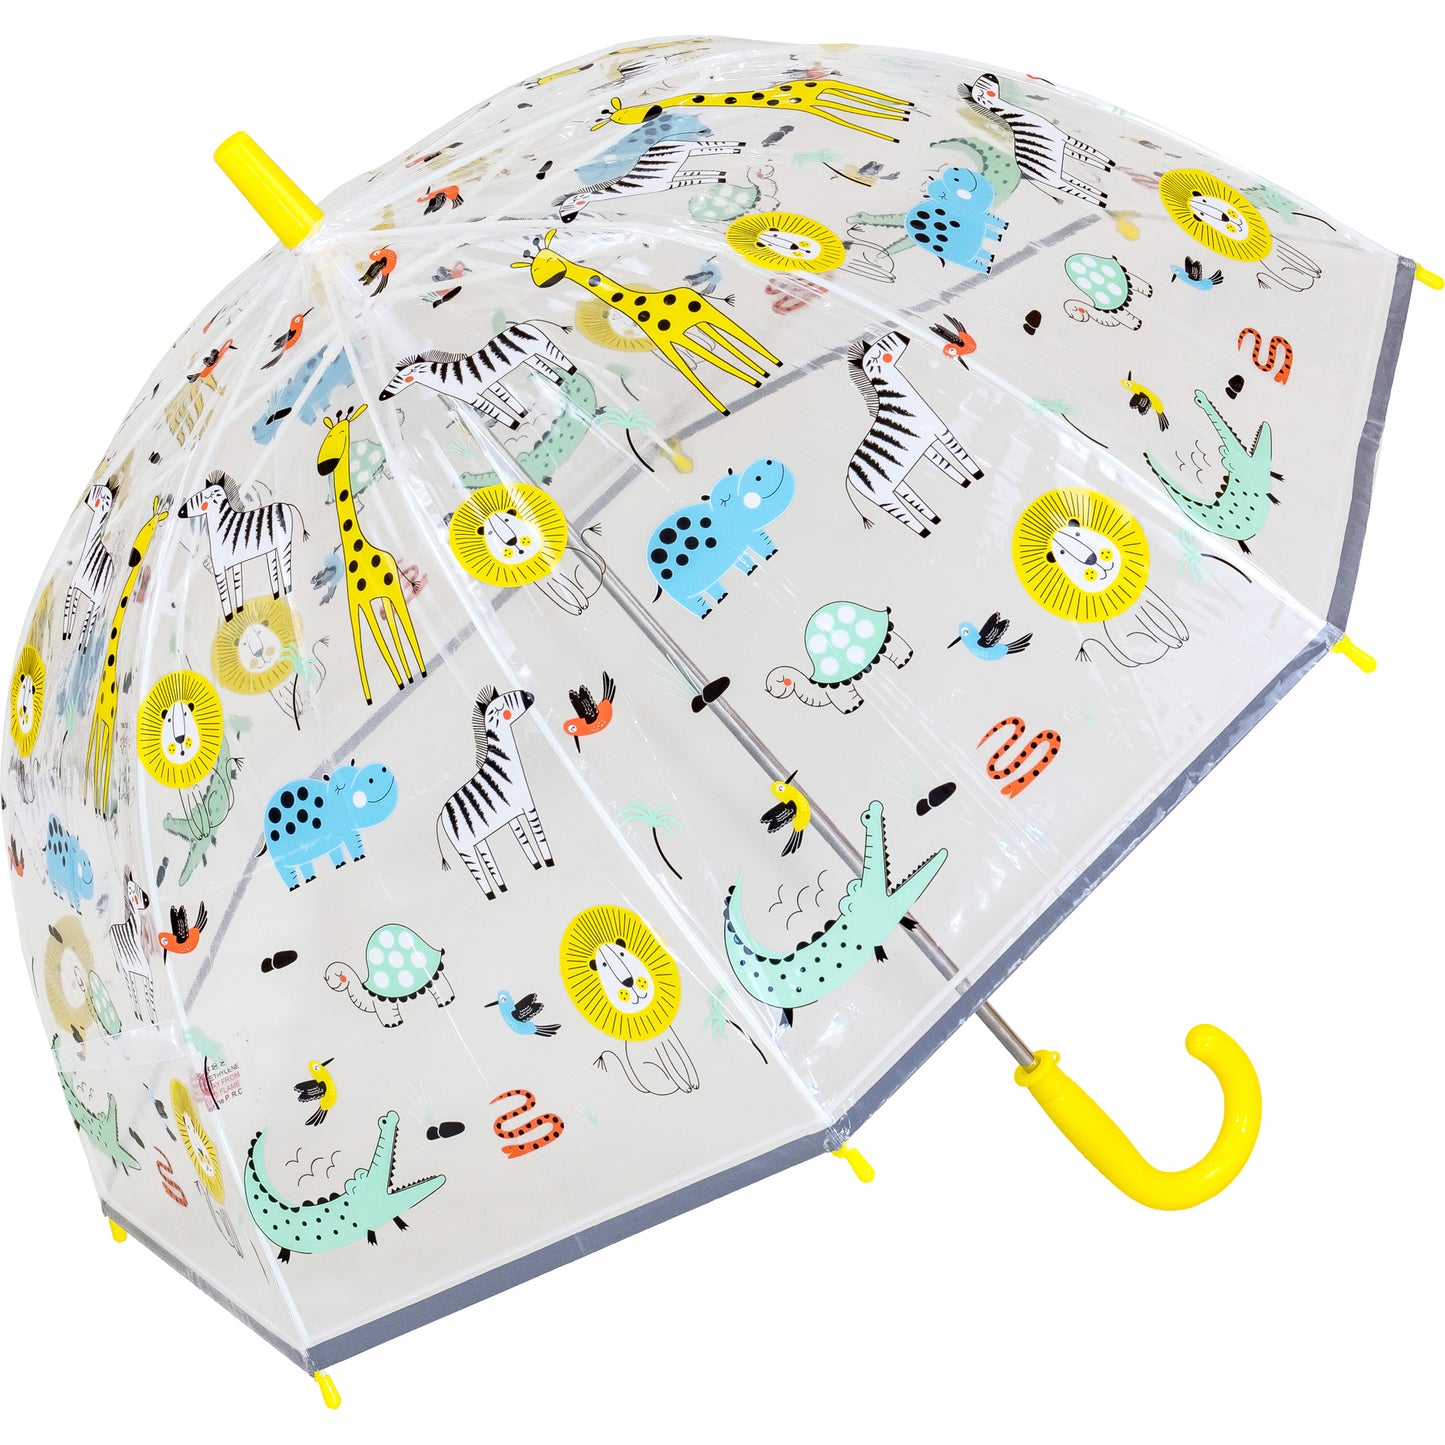 Children's Jungle Animal Print Dome Umbrella